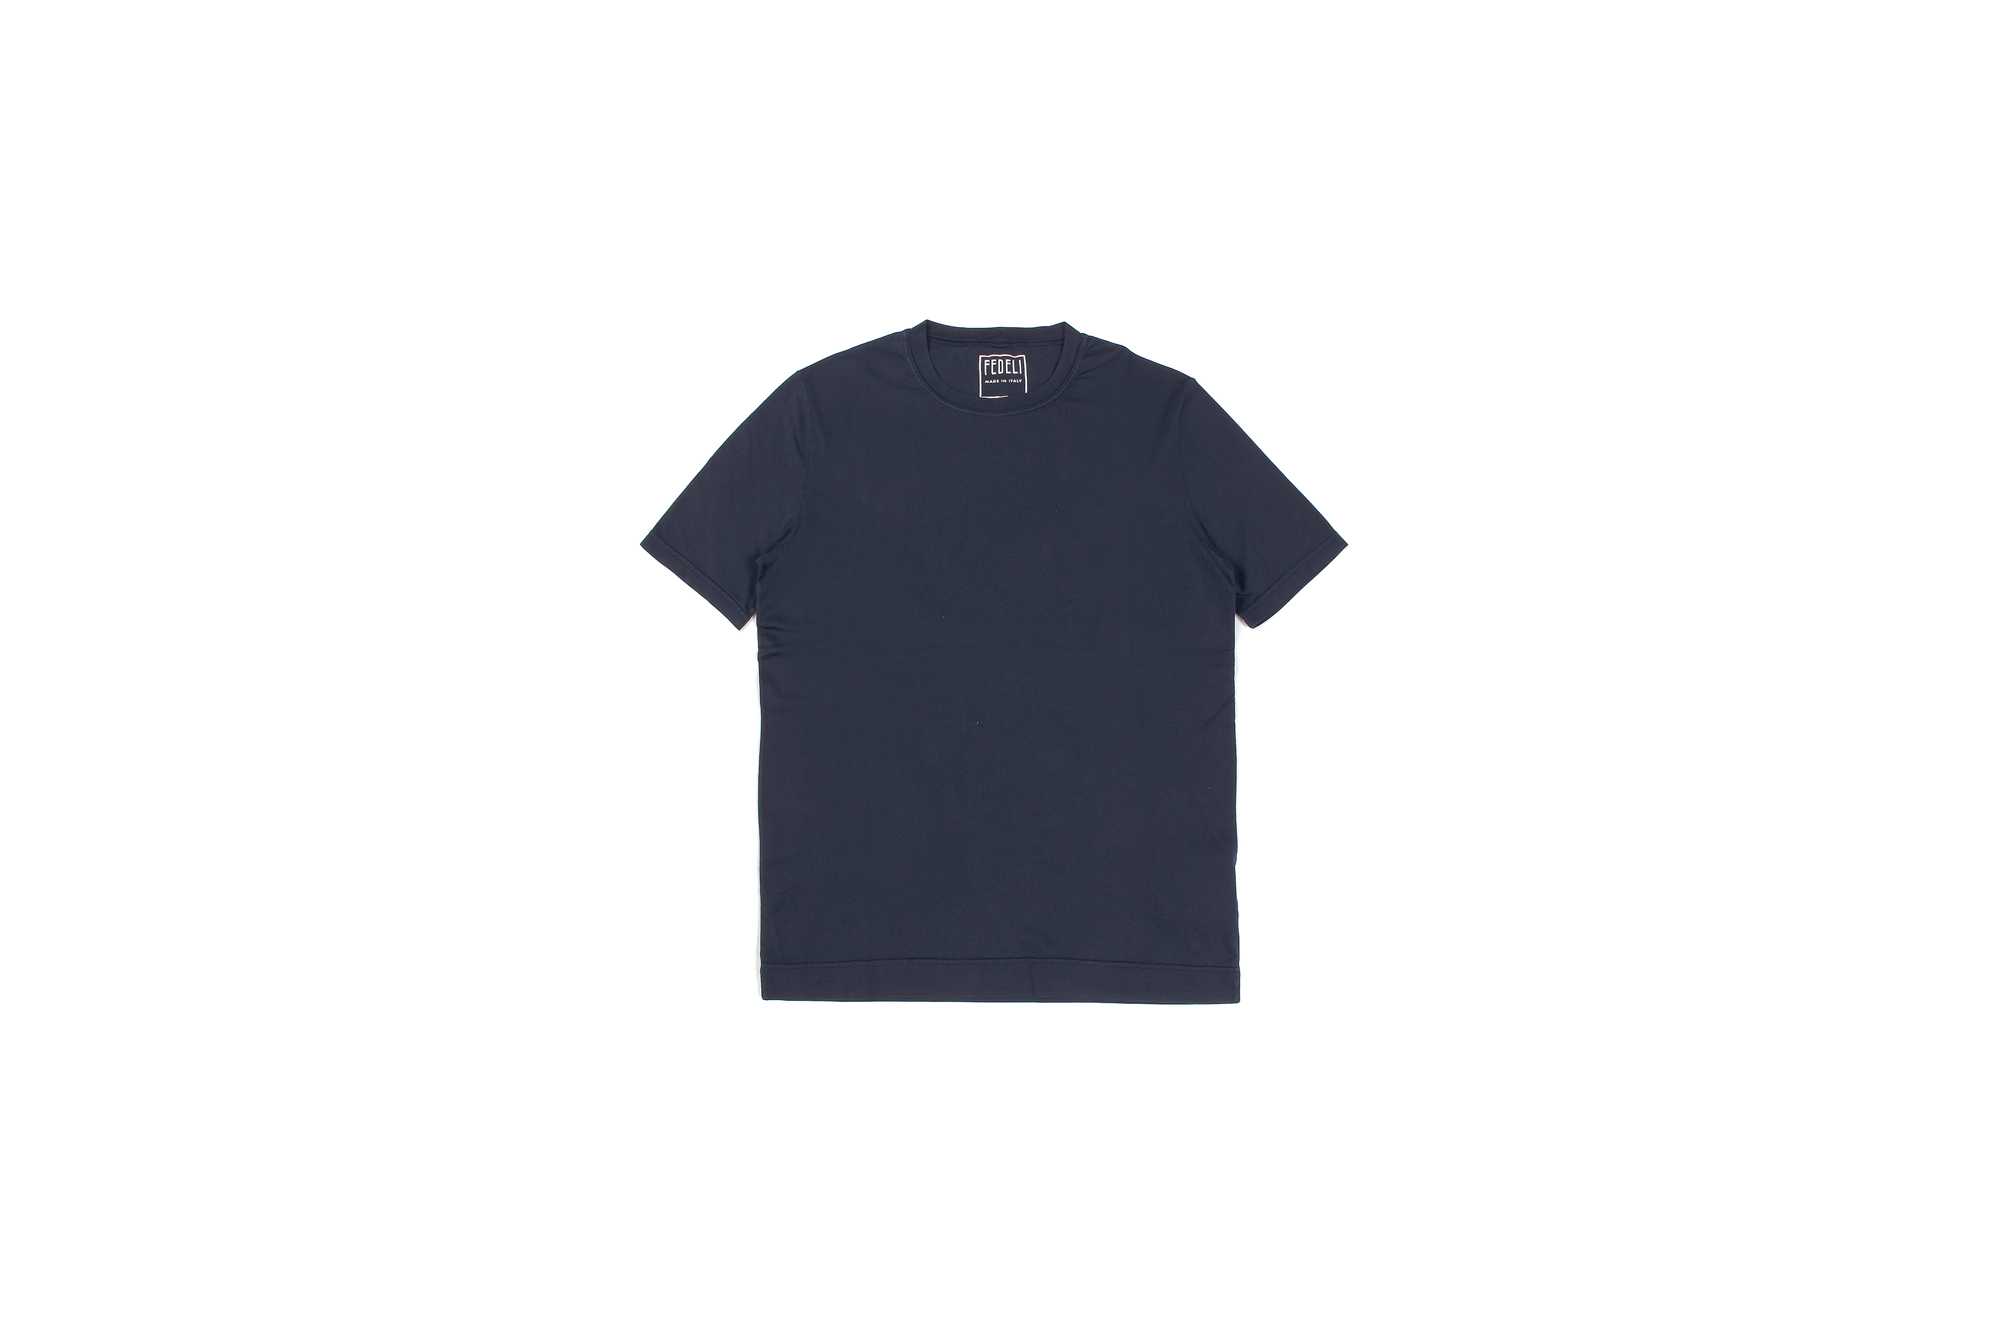 FEDELI(フェデリ) Crew Neck T-shirt (クルーネック Tシャツ) ギザコットン Tシャツ NAVY (ネイビー・626